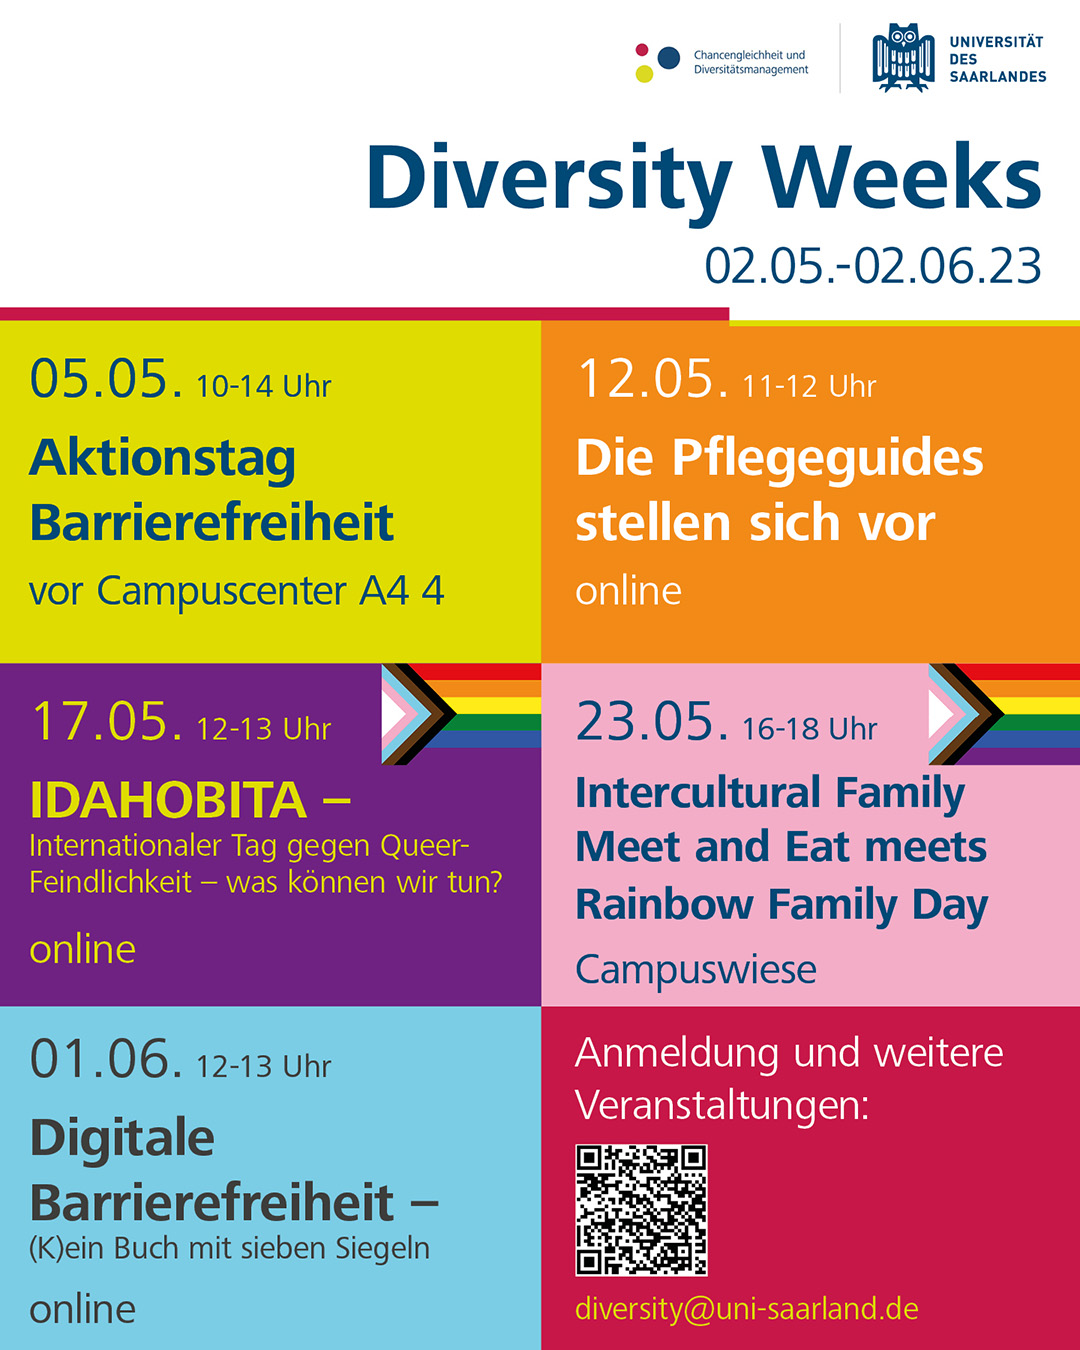 Plakat zu den Diversity Weeks vom 02.05. - 02.06.2023. Sechs farbige Kacheln mit Datum und Ort zu einigen der Veranstaltungen 